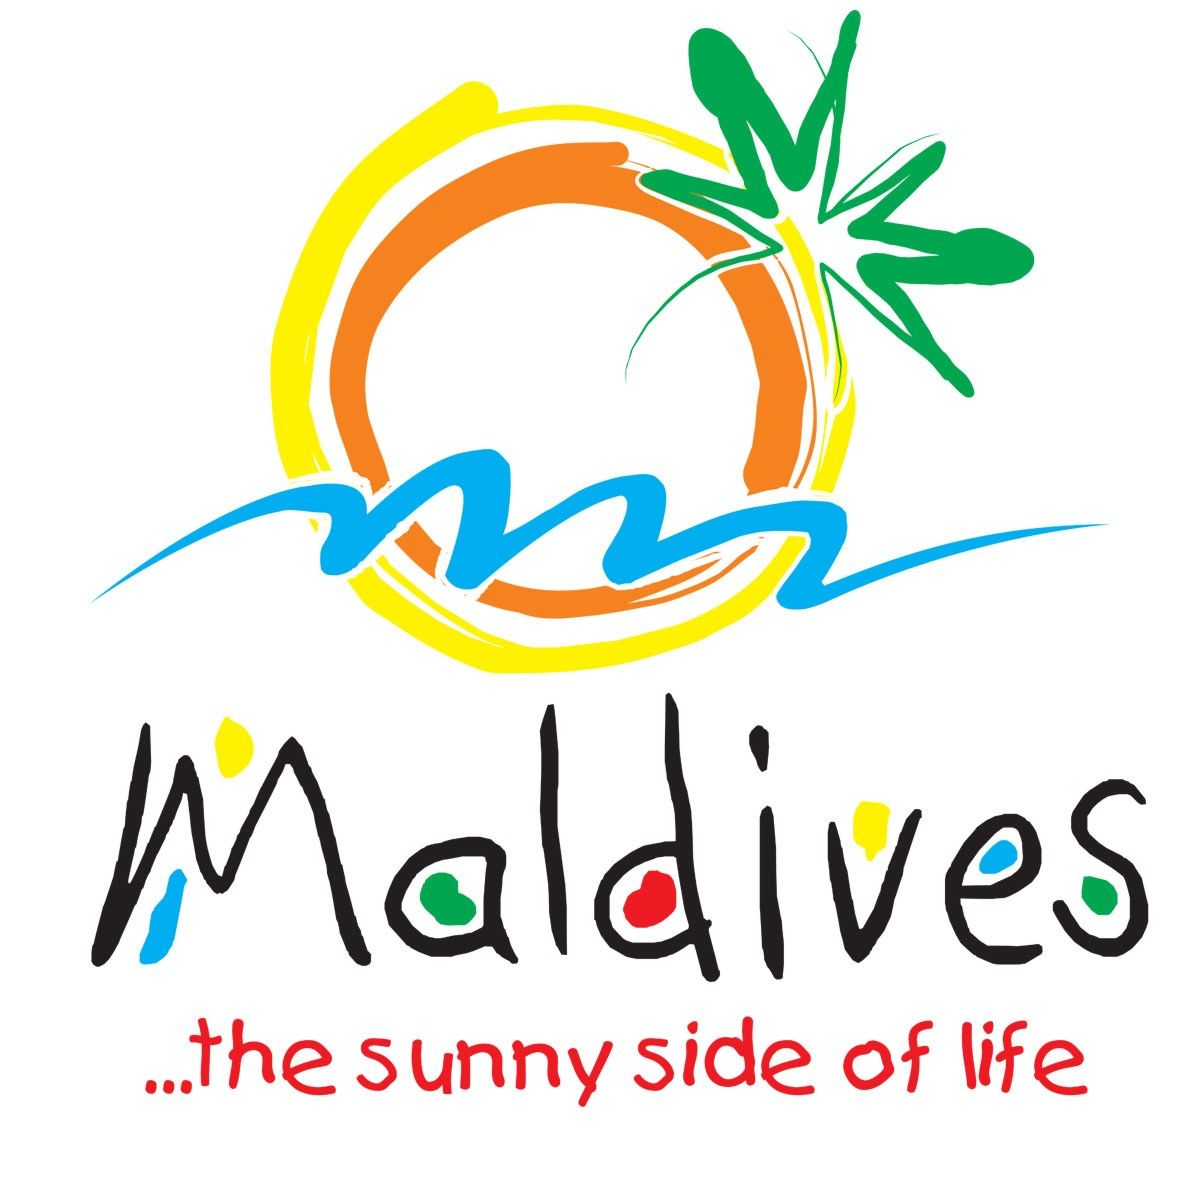 Maldivler Hakkında